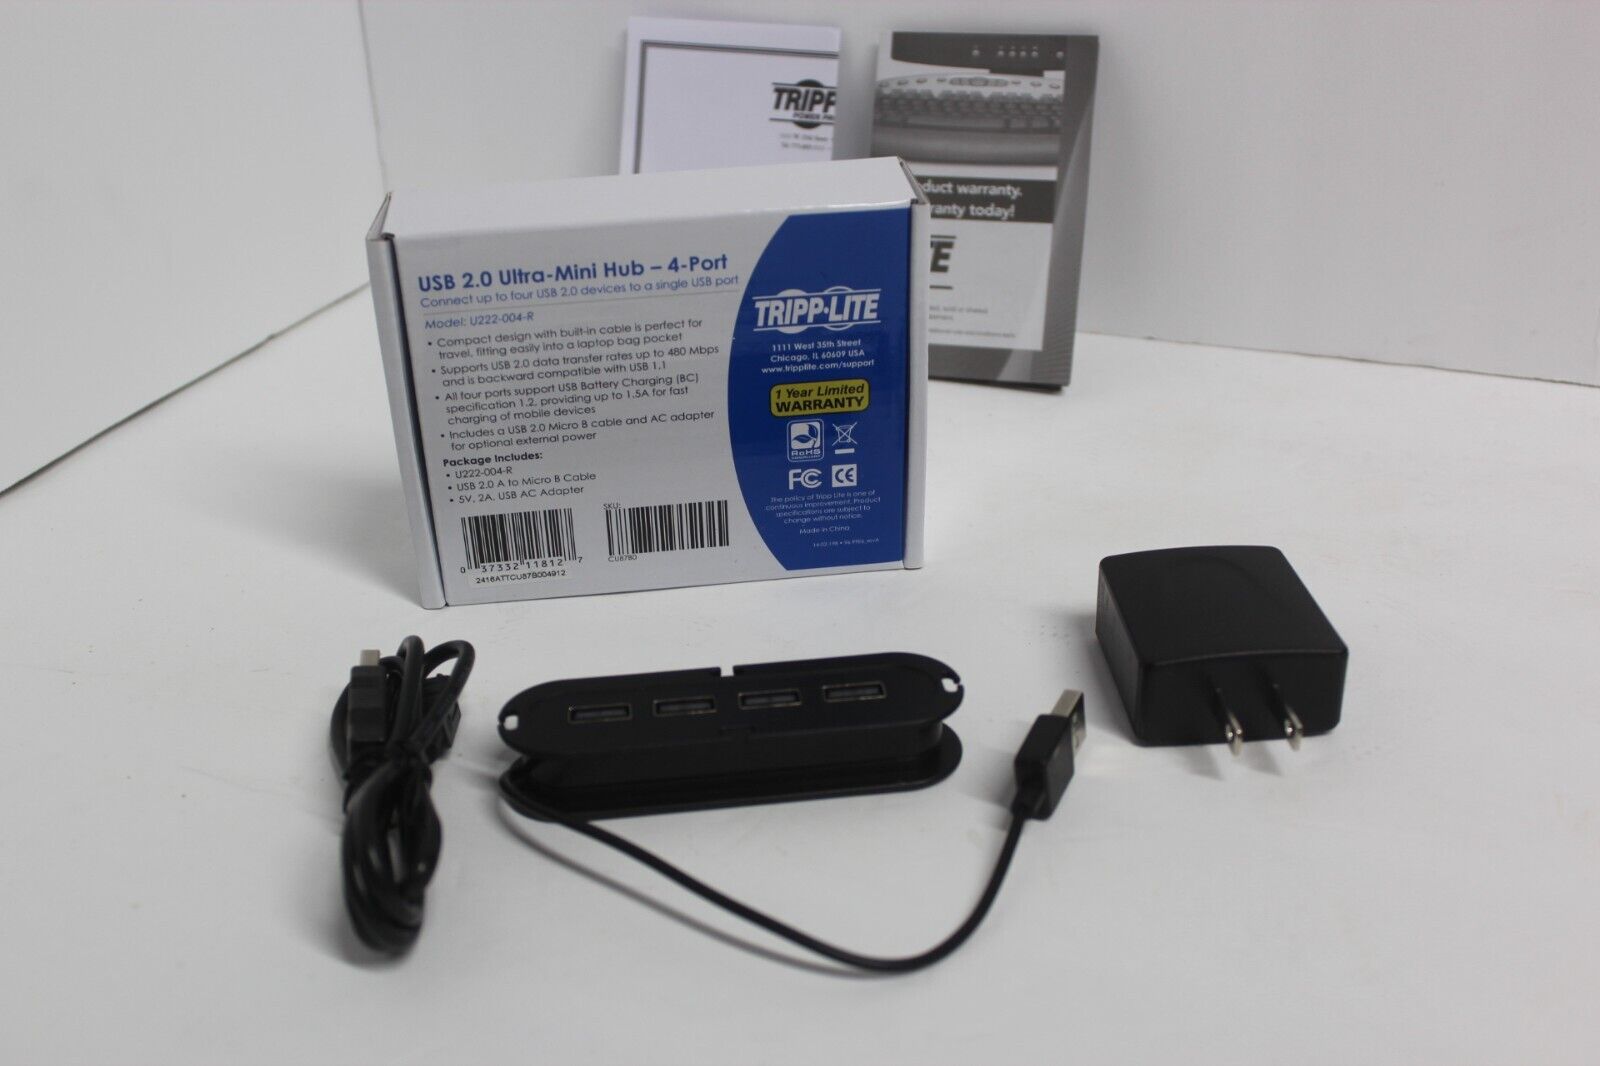 Tripp Lite USB Ultra-Mini Hub 4-Port Powered AC Adapter included BNIB